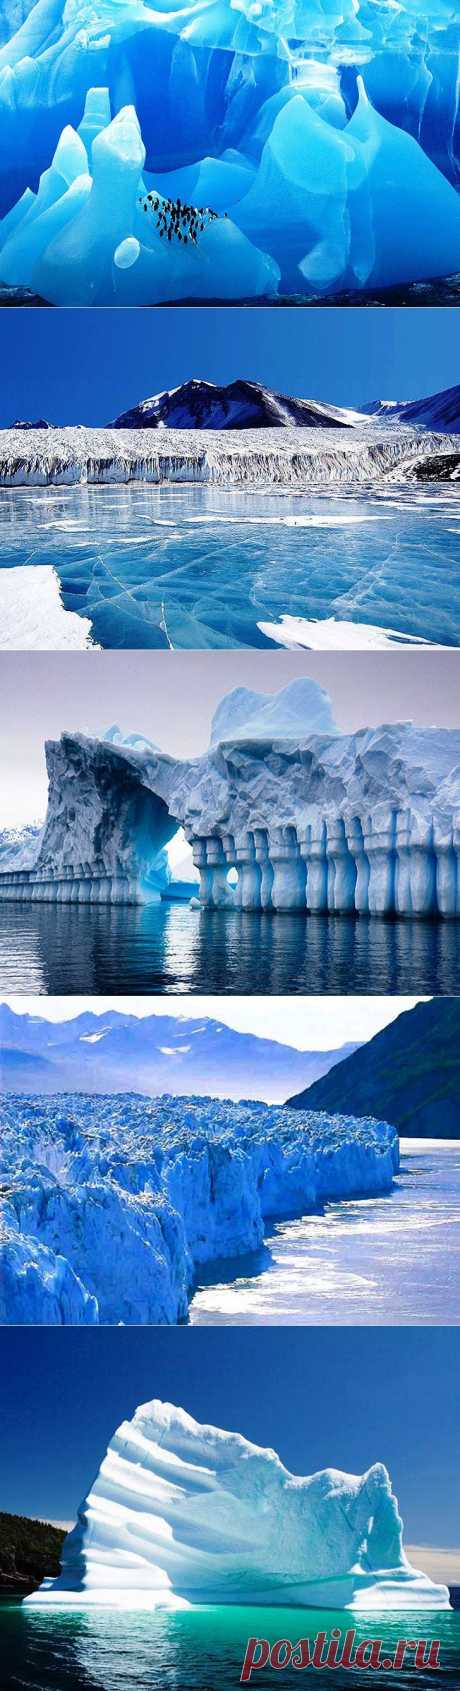 Впечатляющие айсберги и ледники - Наука и жизнь